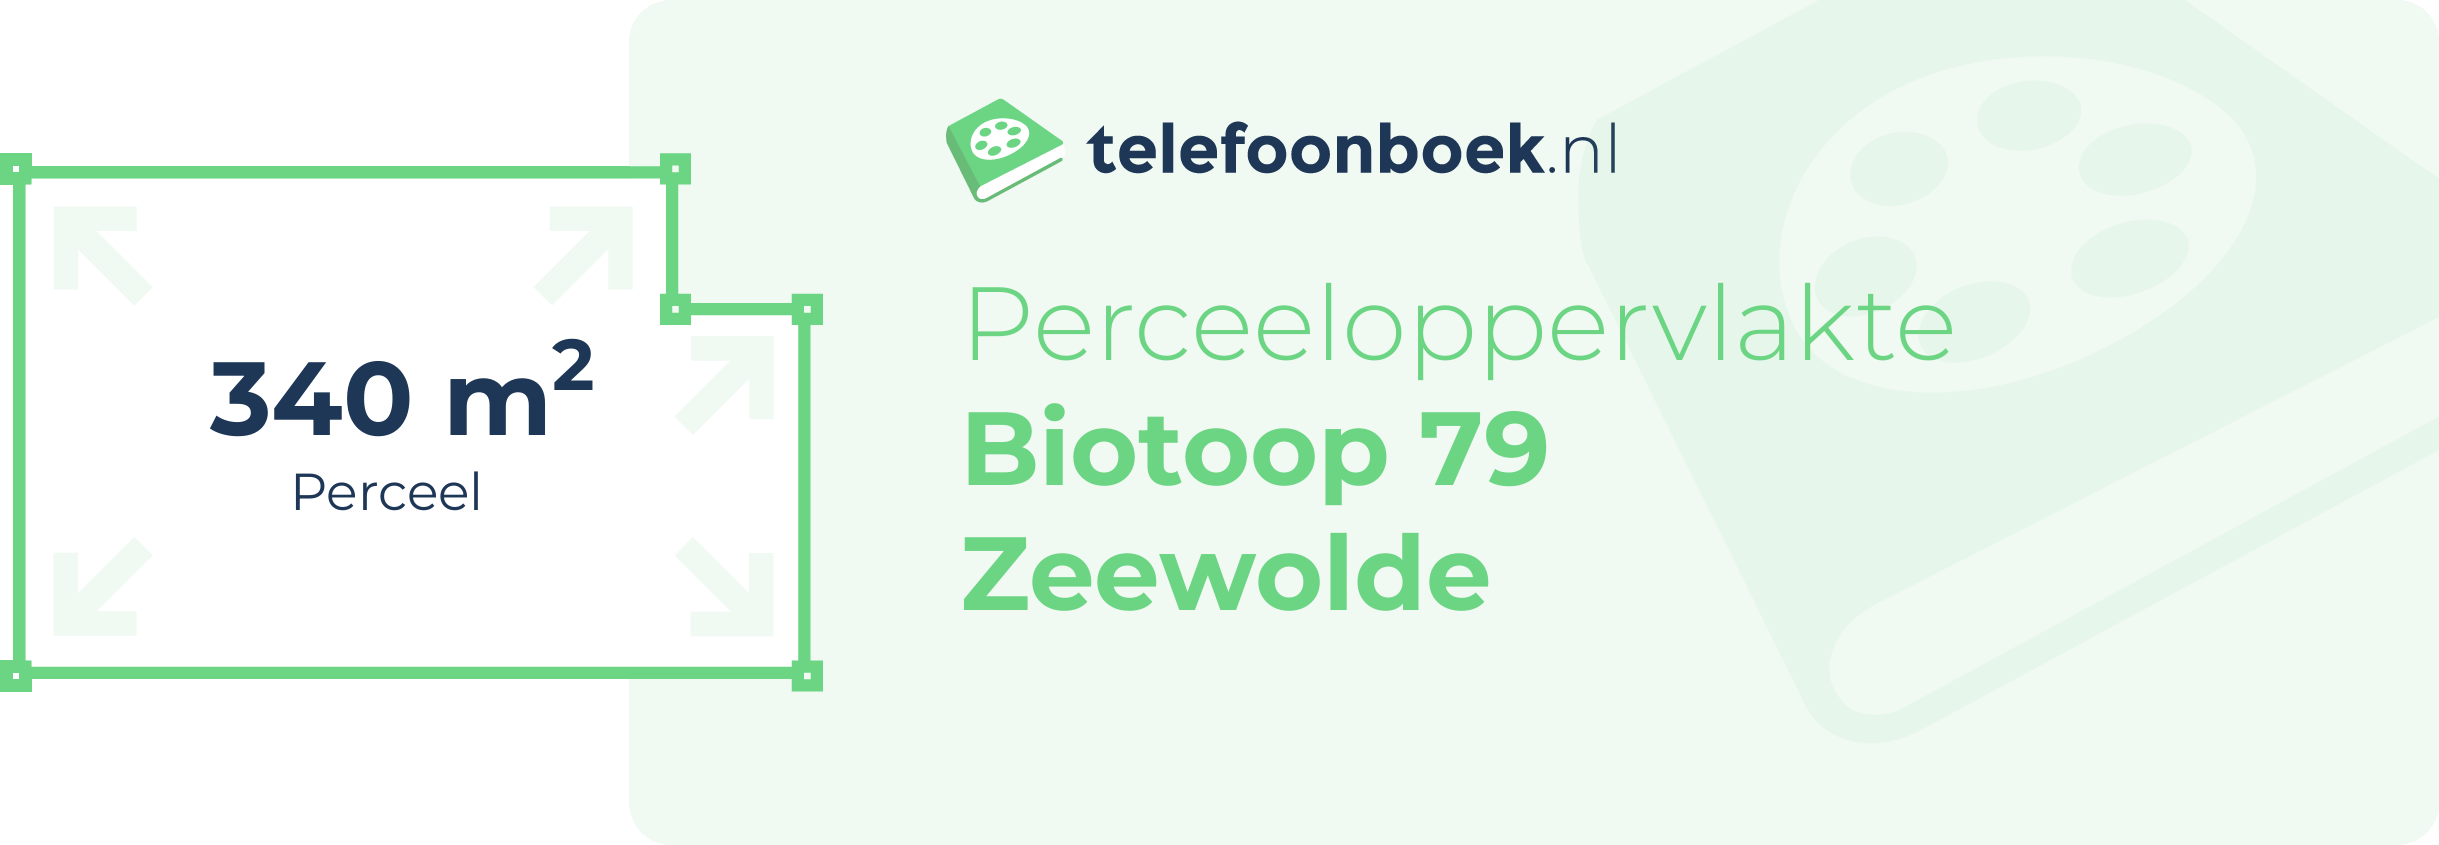 Perceeloppervlakte Biotoop 79 Zeewolde